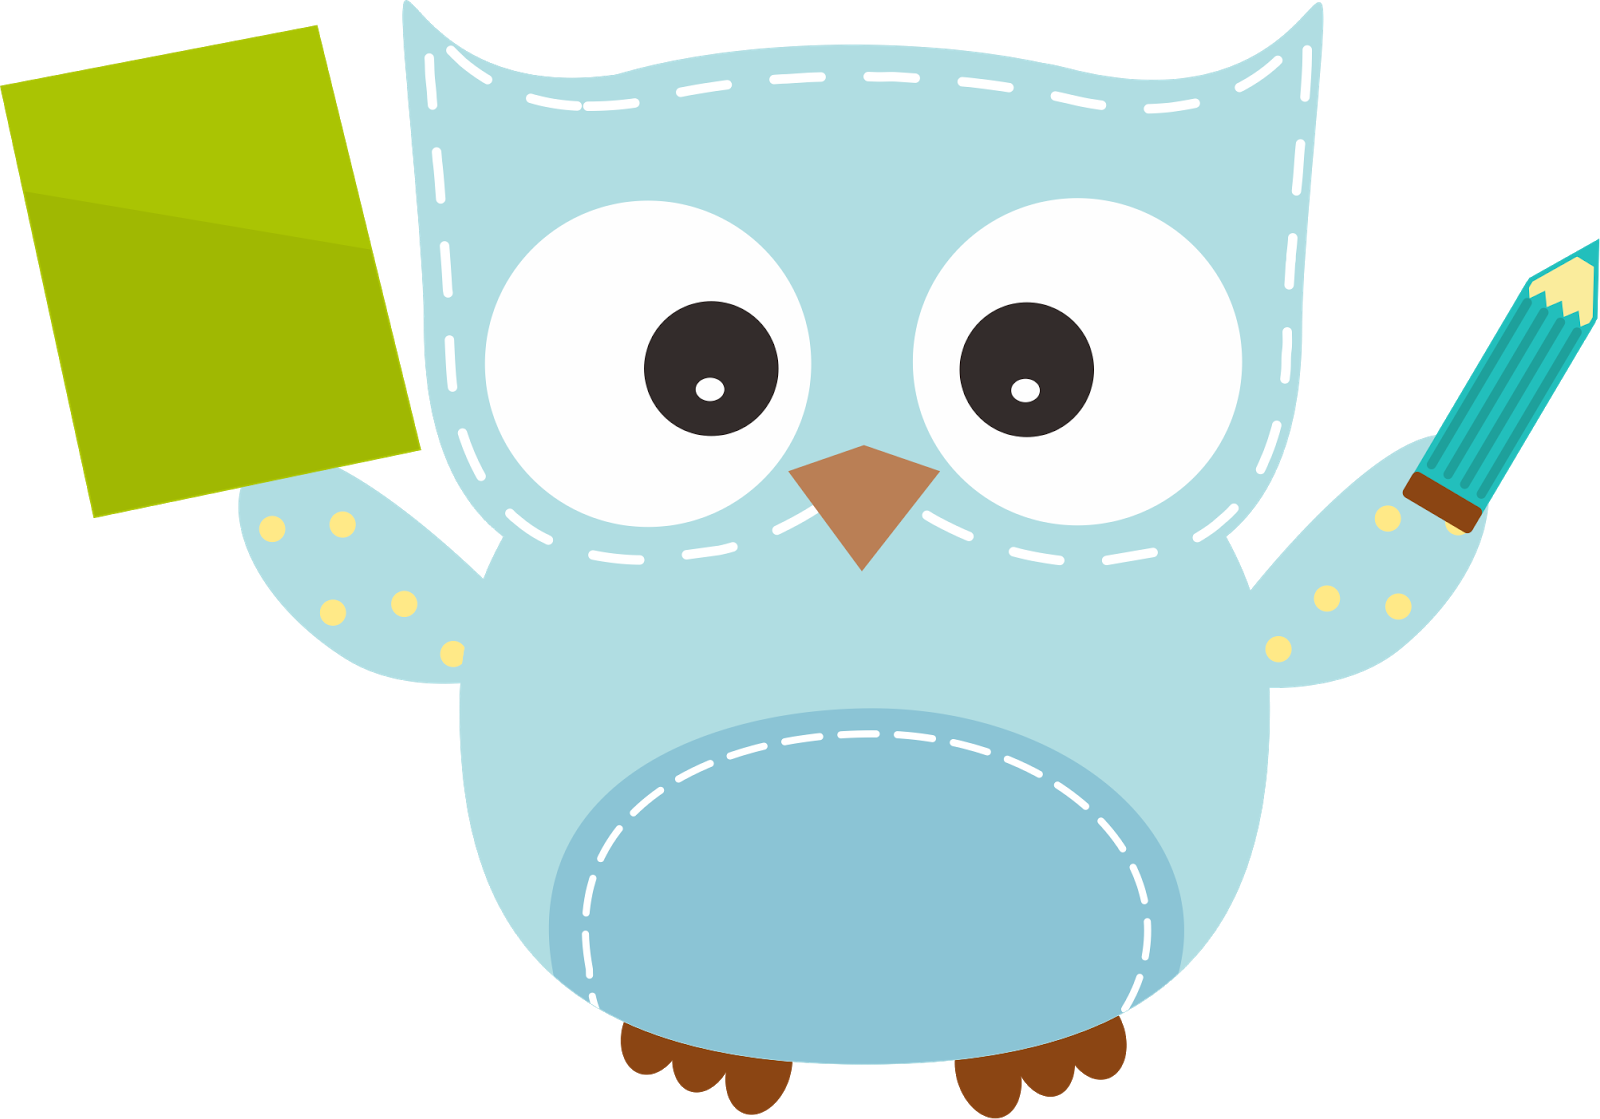 Spelling owl